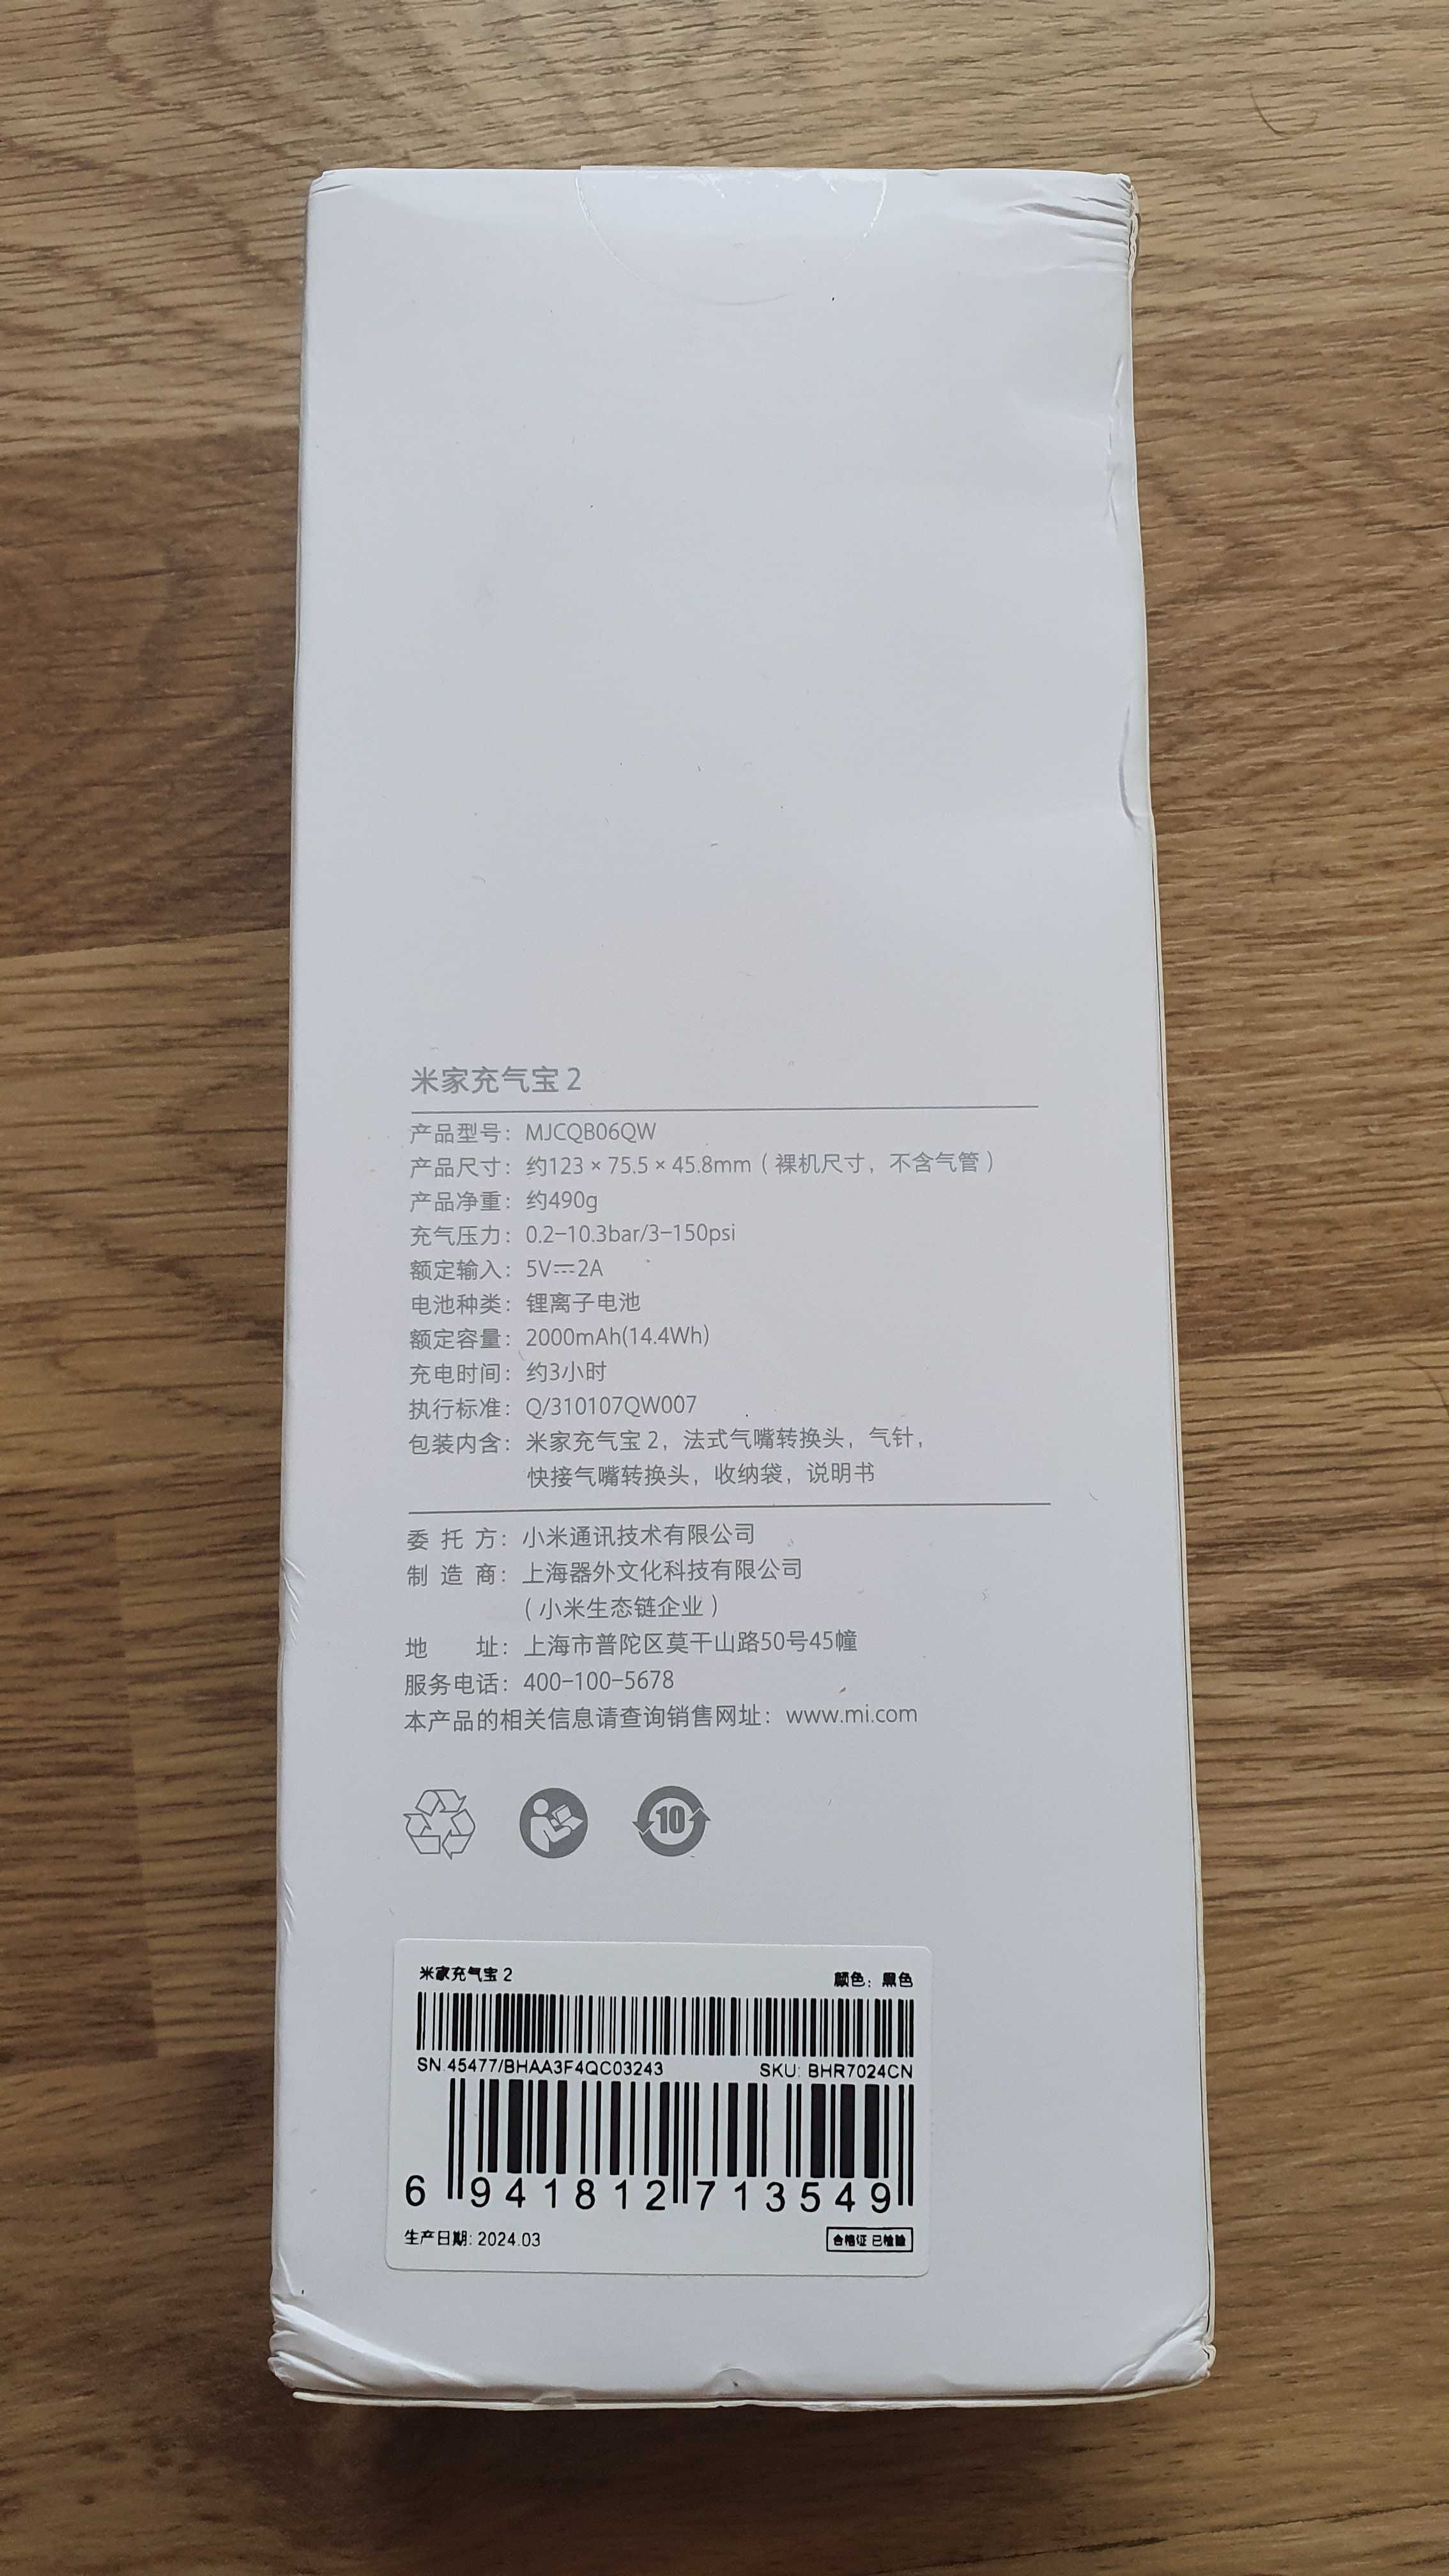 Xiaomi mijia air pump 2 насос компрессор compressor 2 поколение